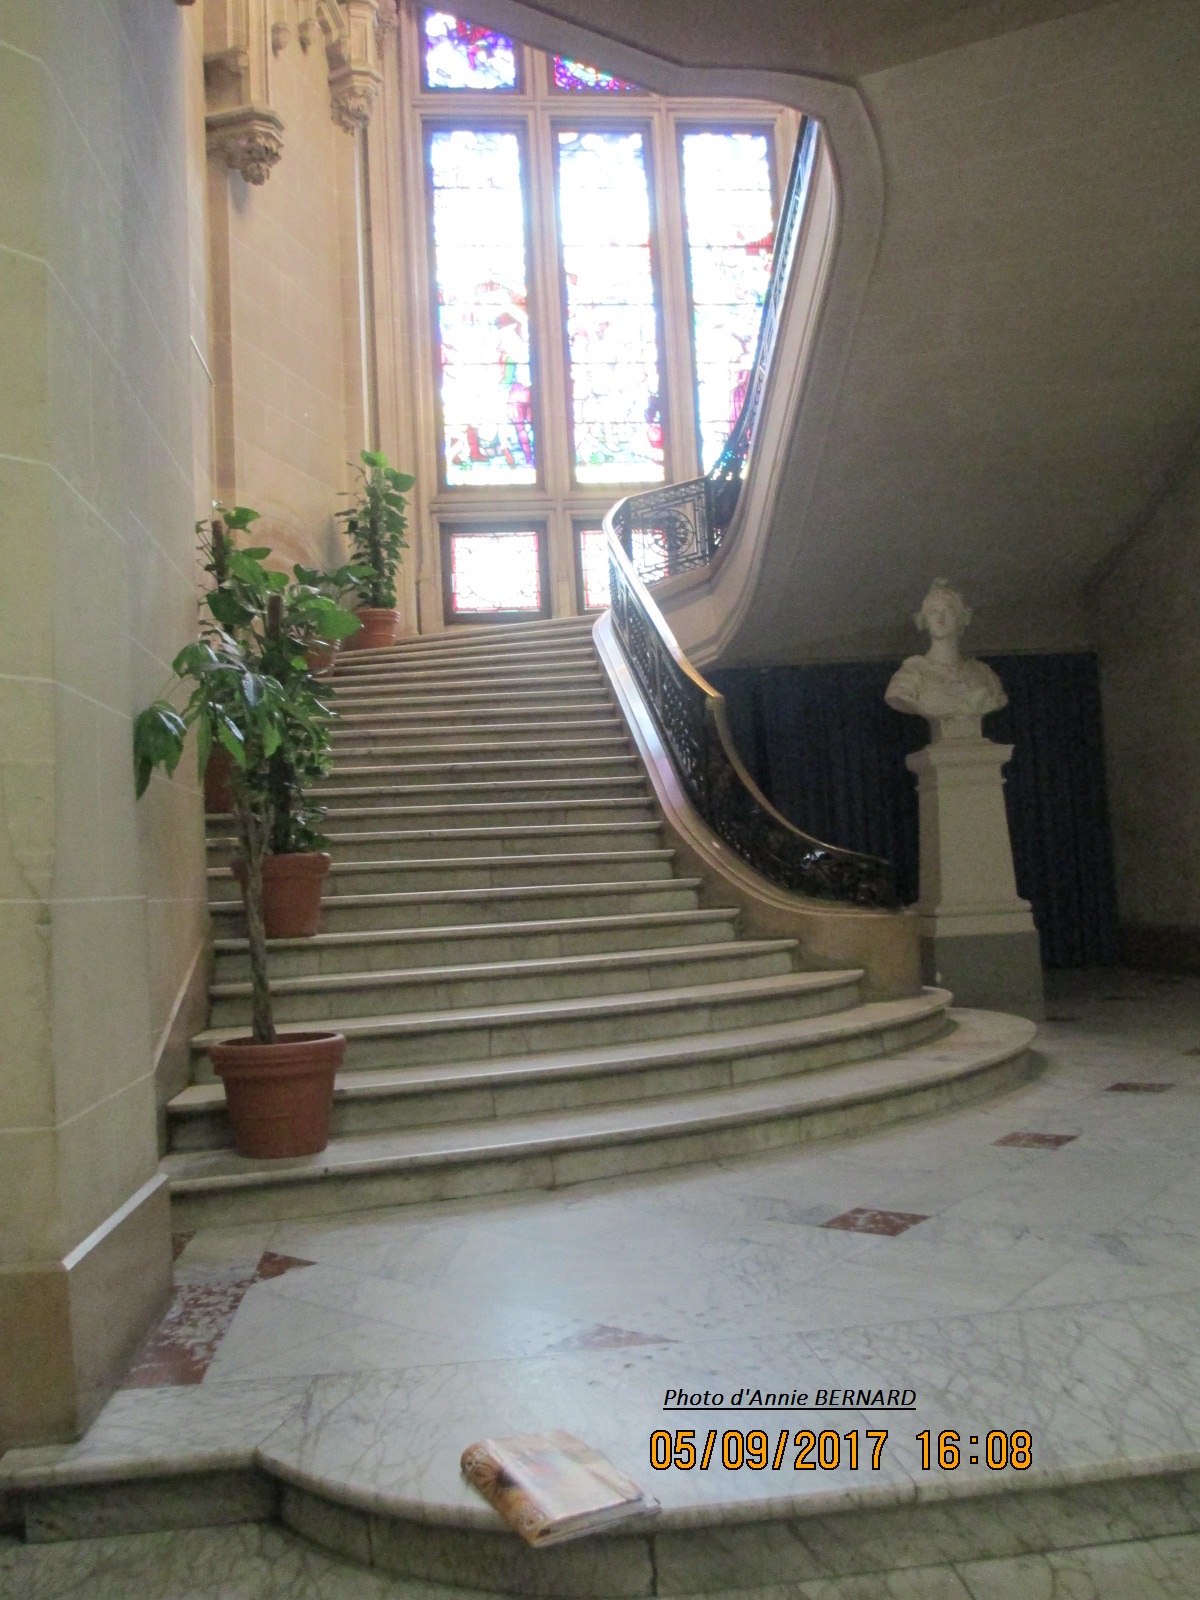 Bel escalier de l'Hôtel de ville de Calais